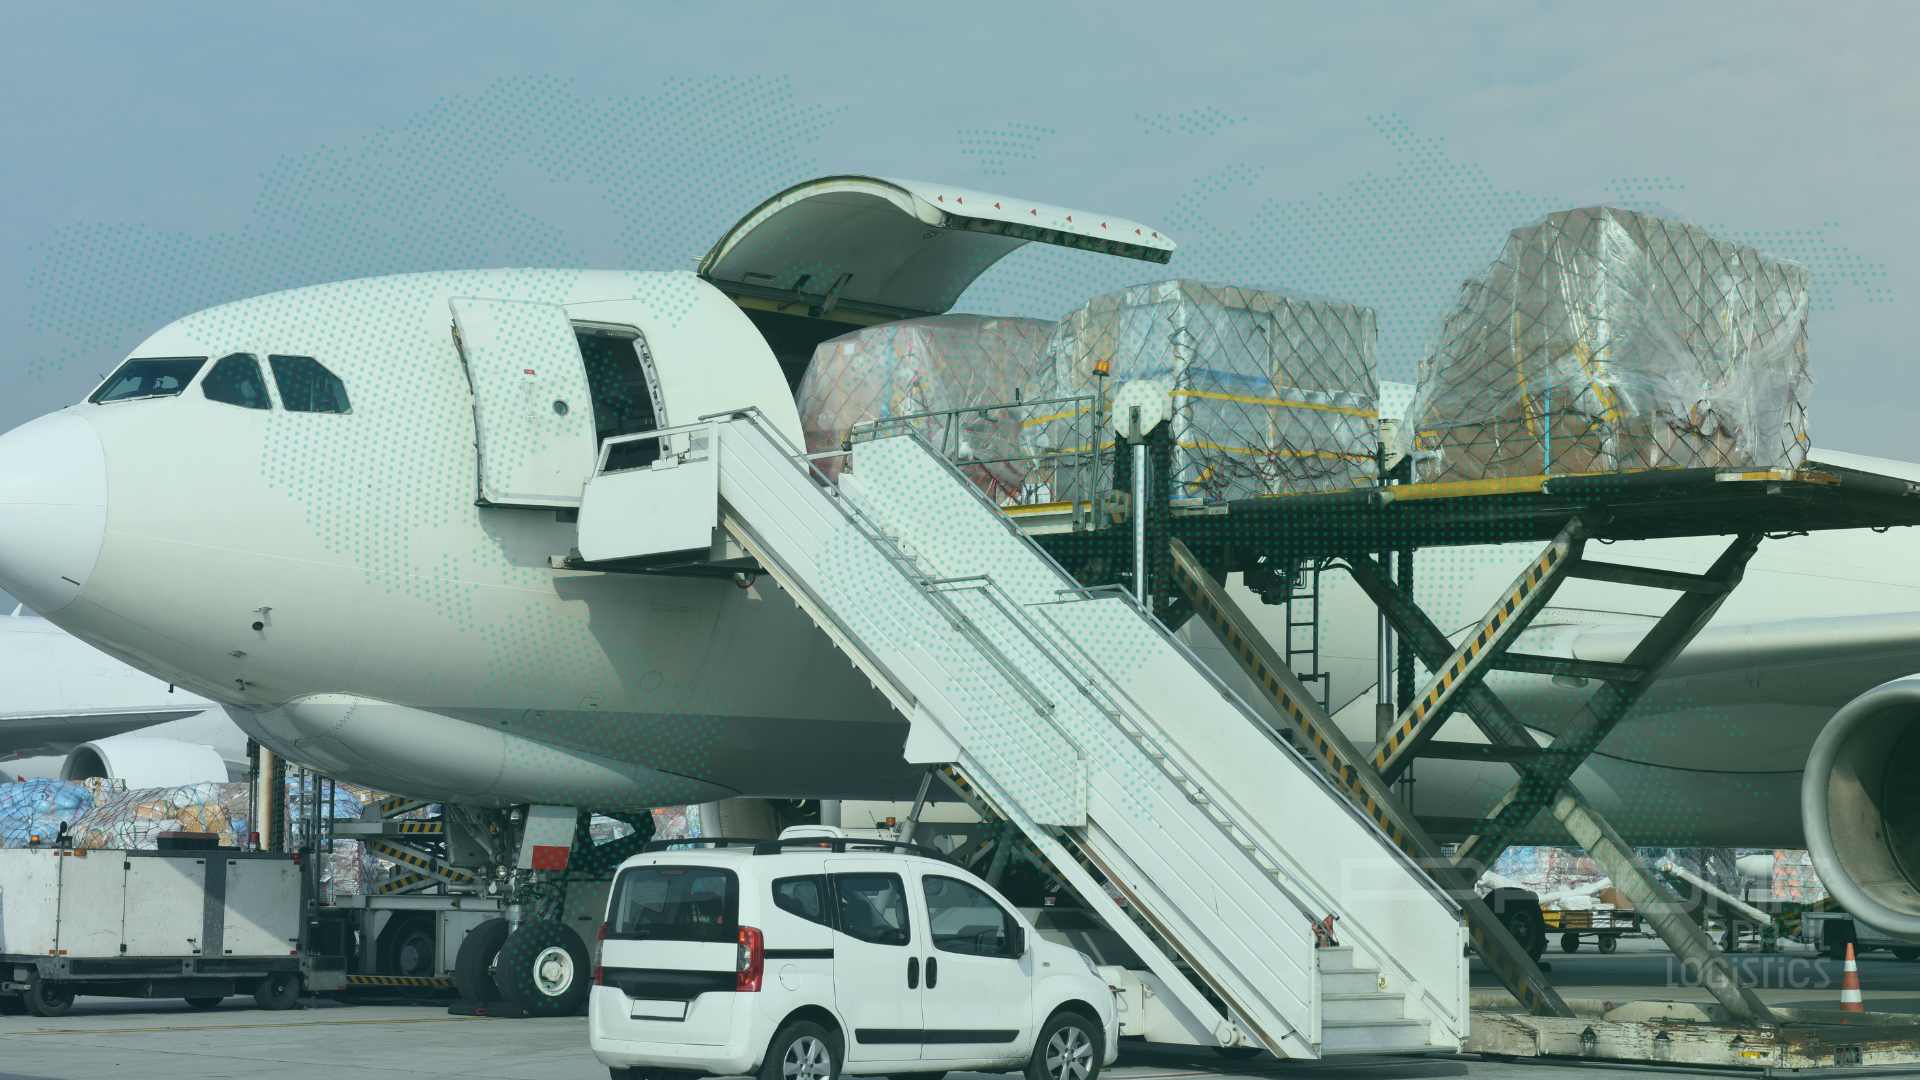 Principais duvidas sobre logística o que precisa fazer para enviar uma carga no aeroporto regras aeroporto para envio de carga prompt brazil logistics